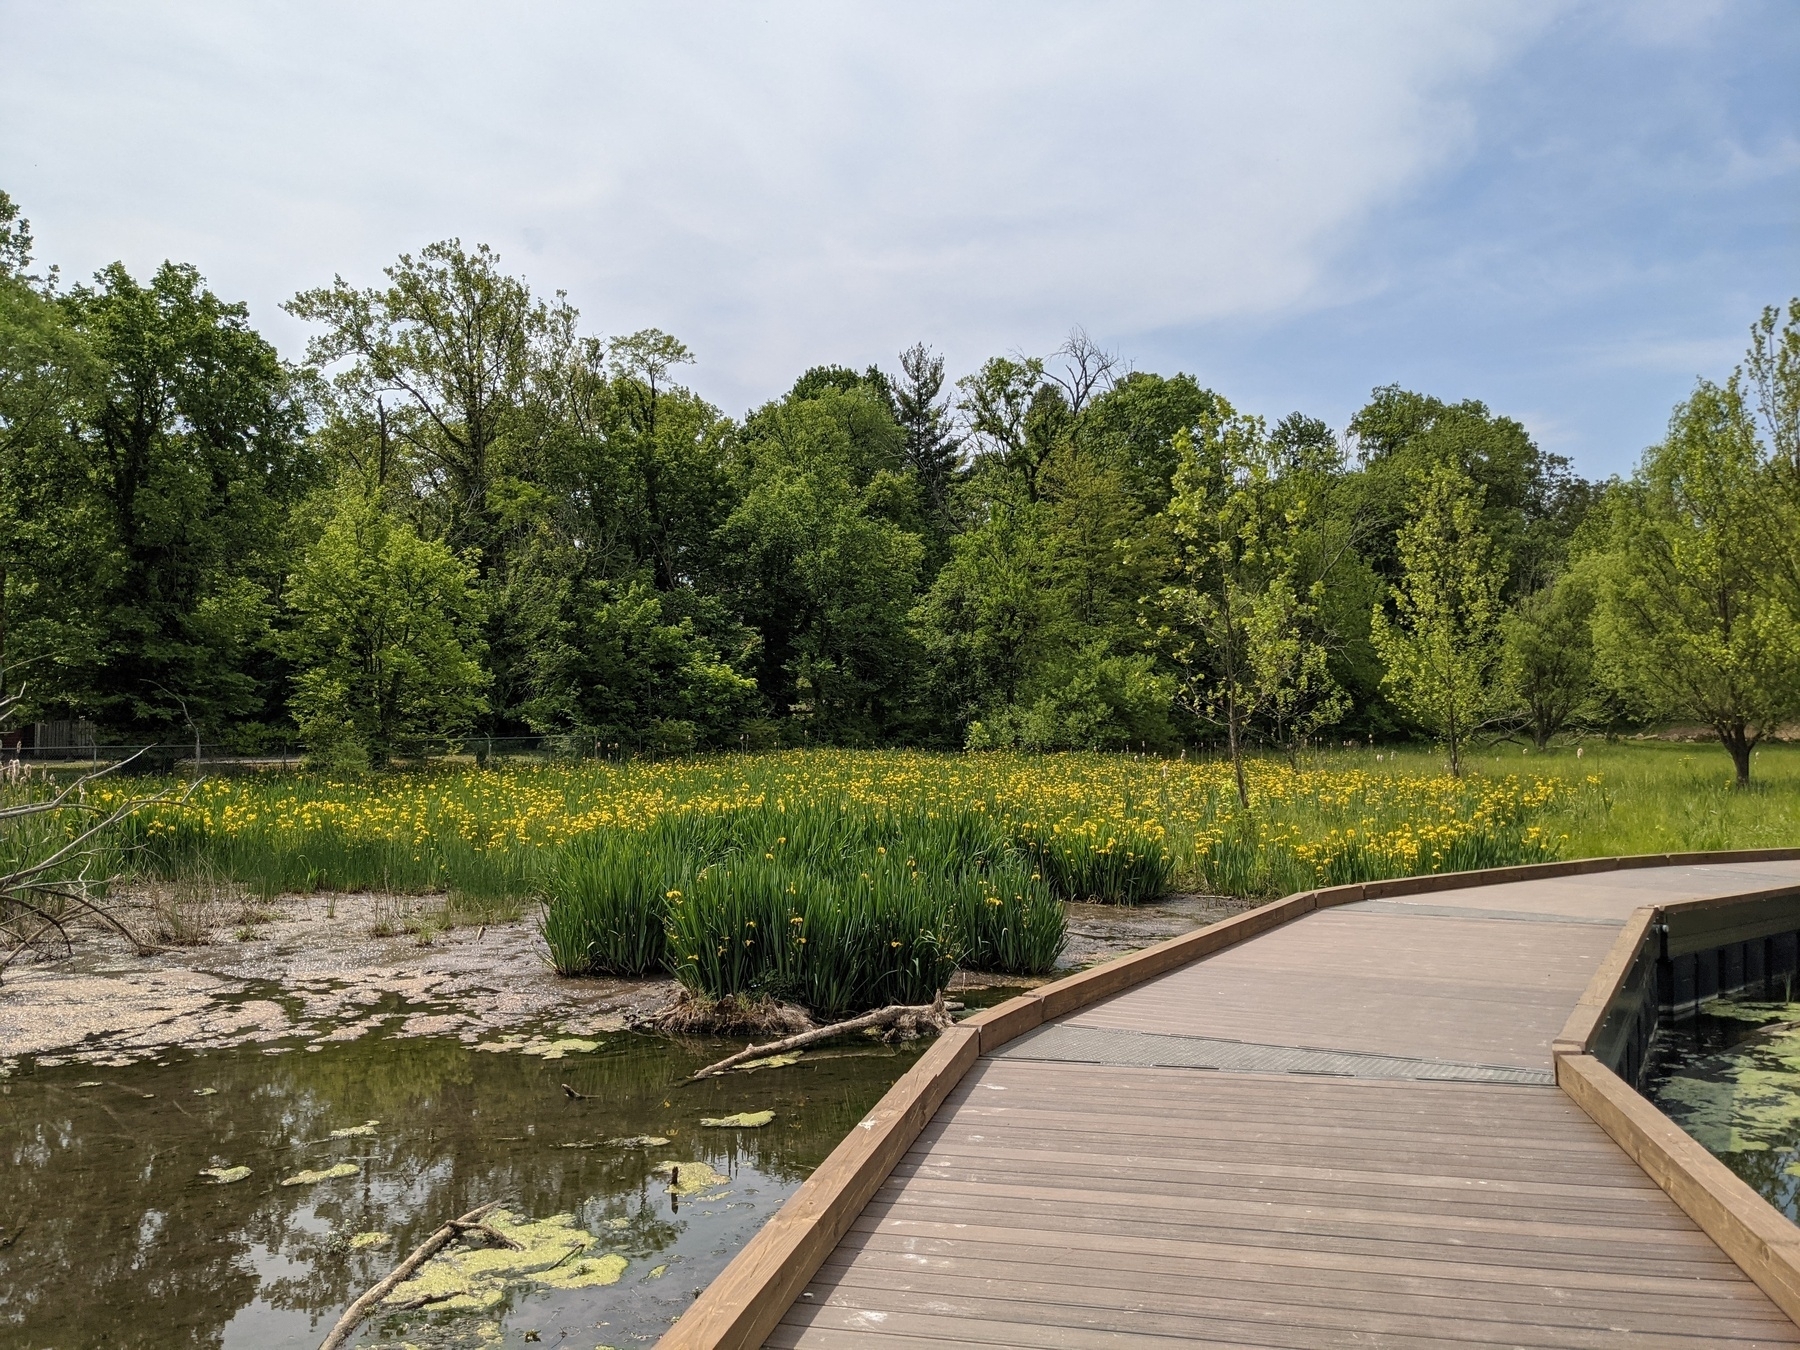 wooden walkway over a wetland garden with irises in bloom